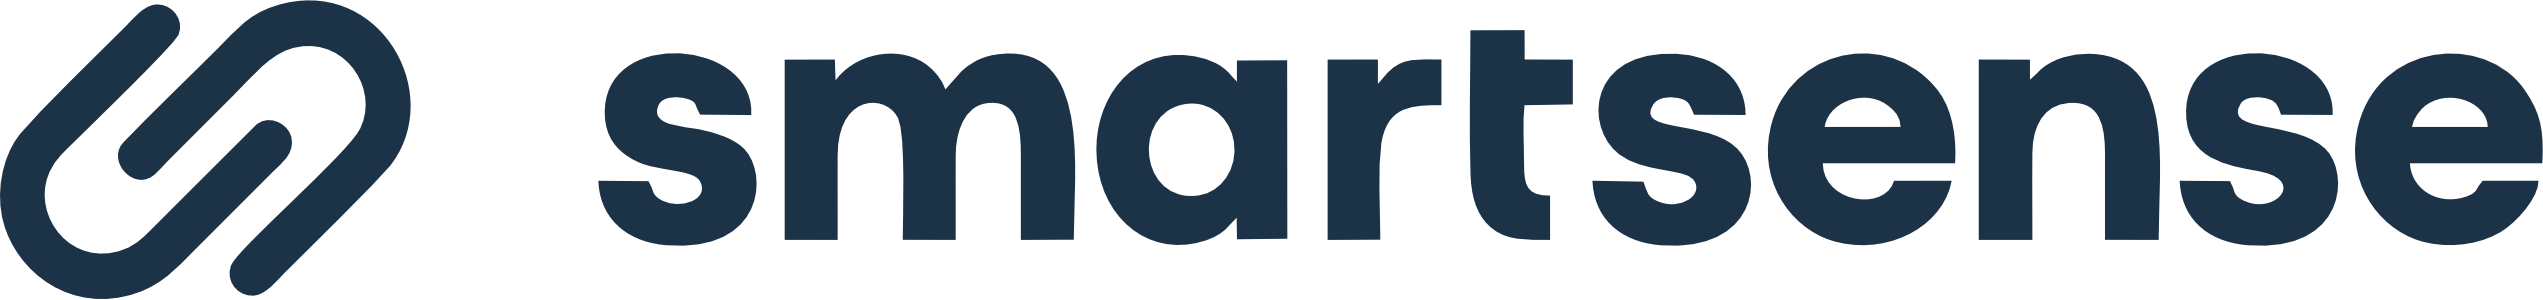 smartsense logo